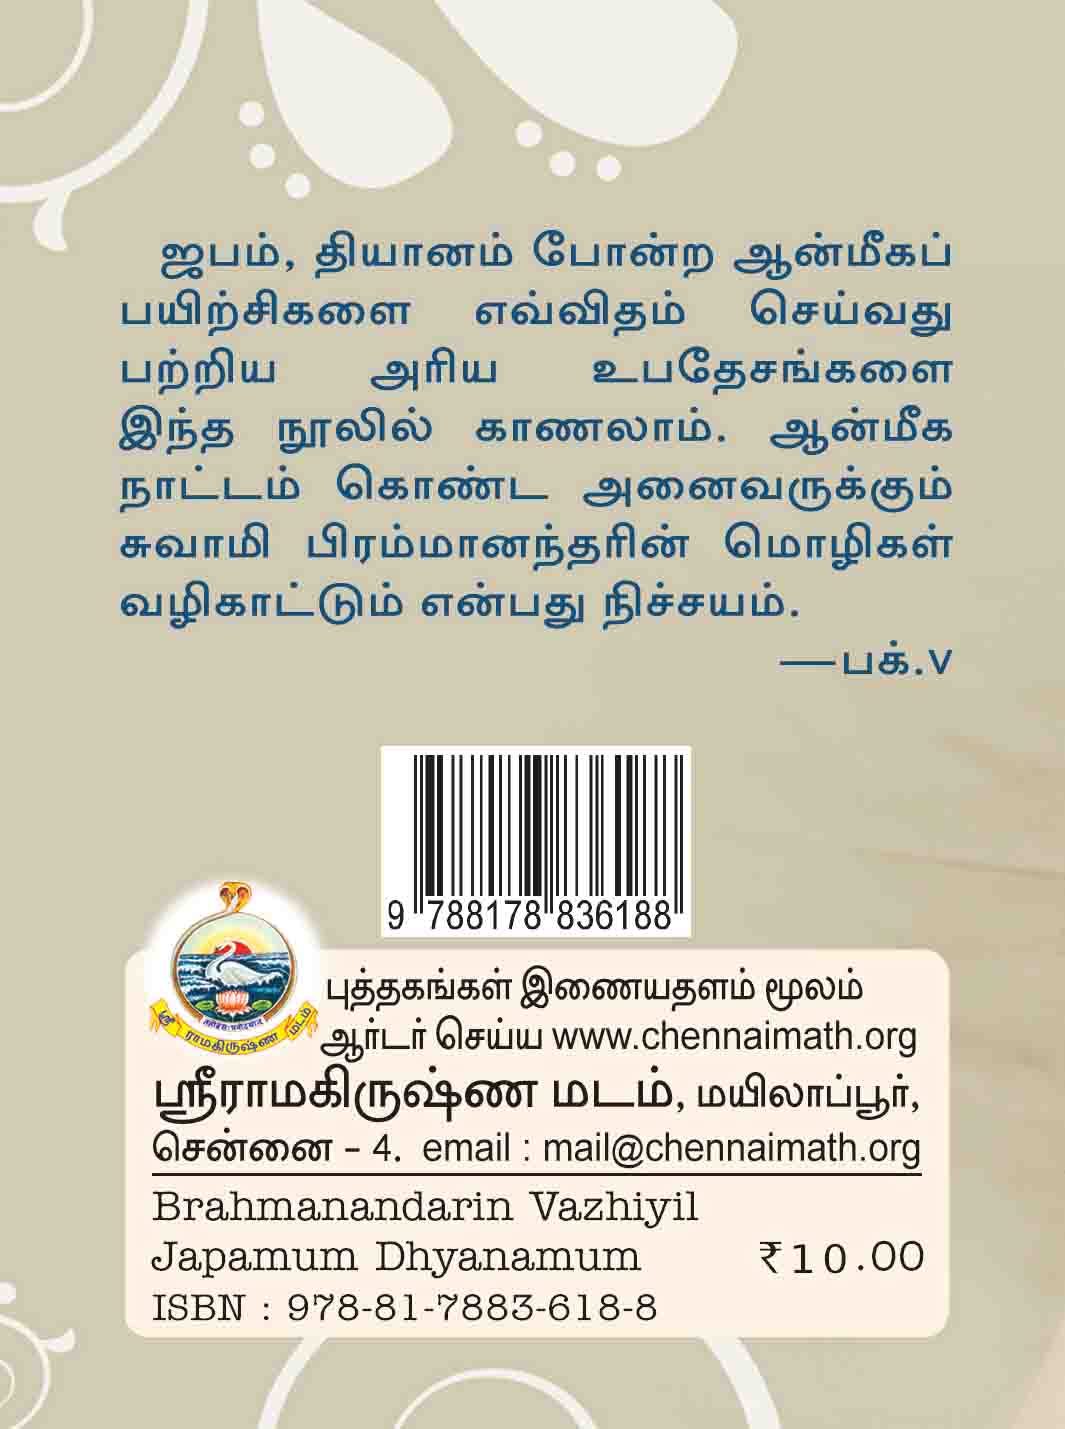 Brahmanandarin Vazhiyil Japamum Dhyanamum (Tamil)